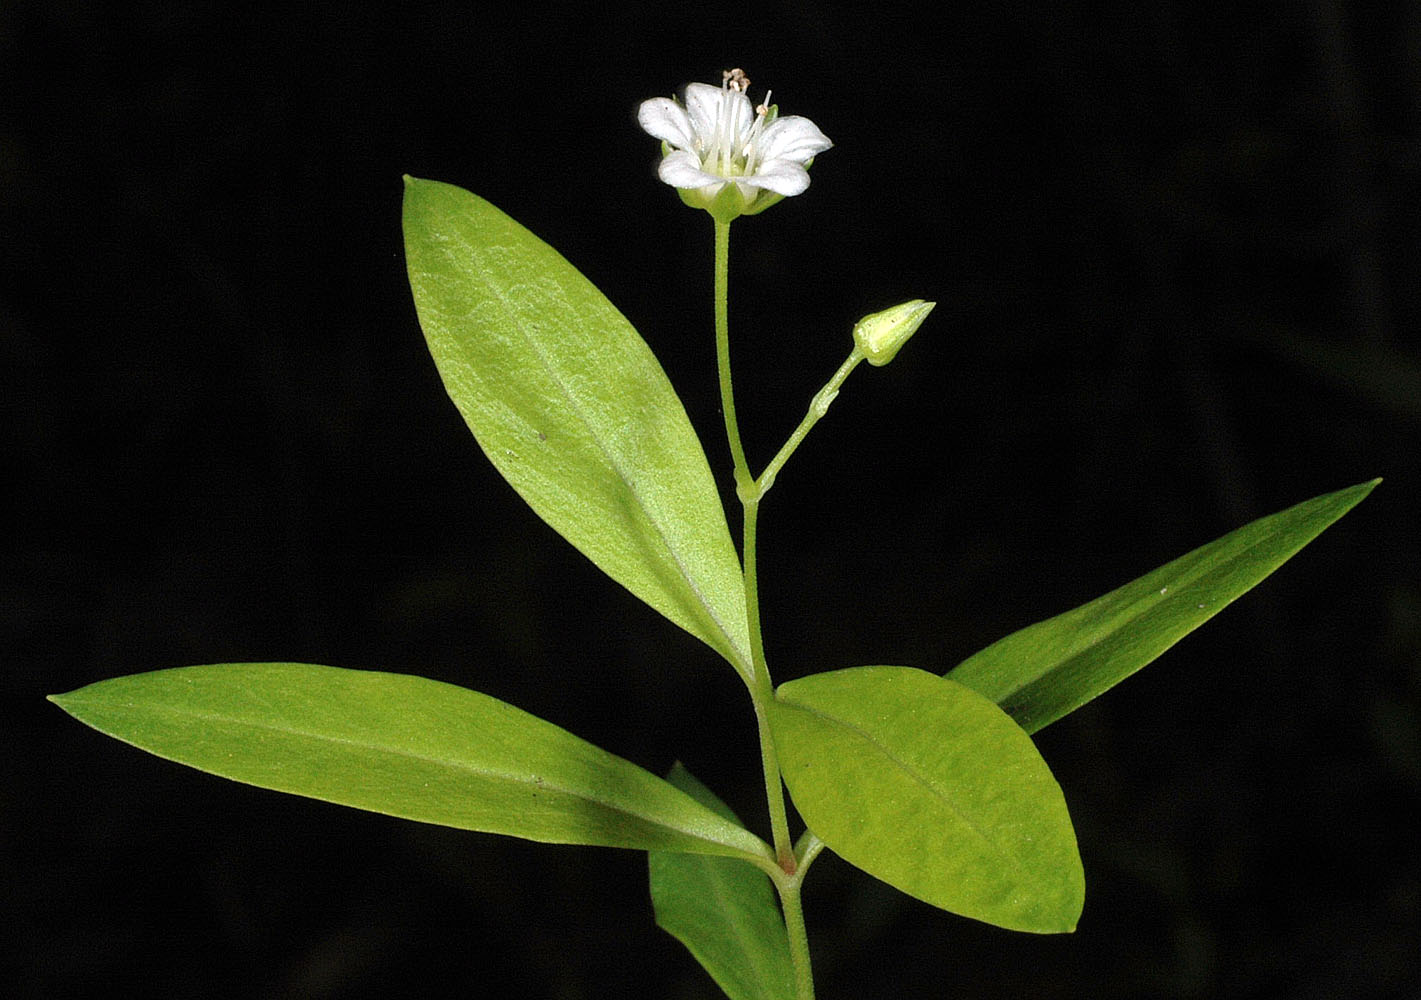 Flora of Eastern Washington Image: Moehringia macrophylla